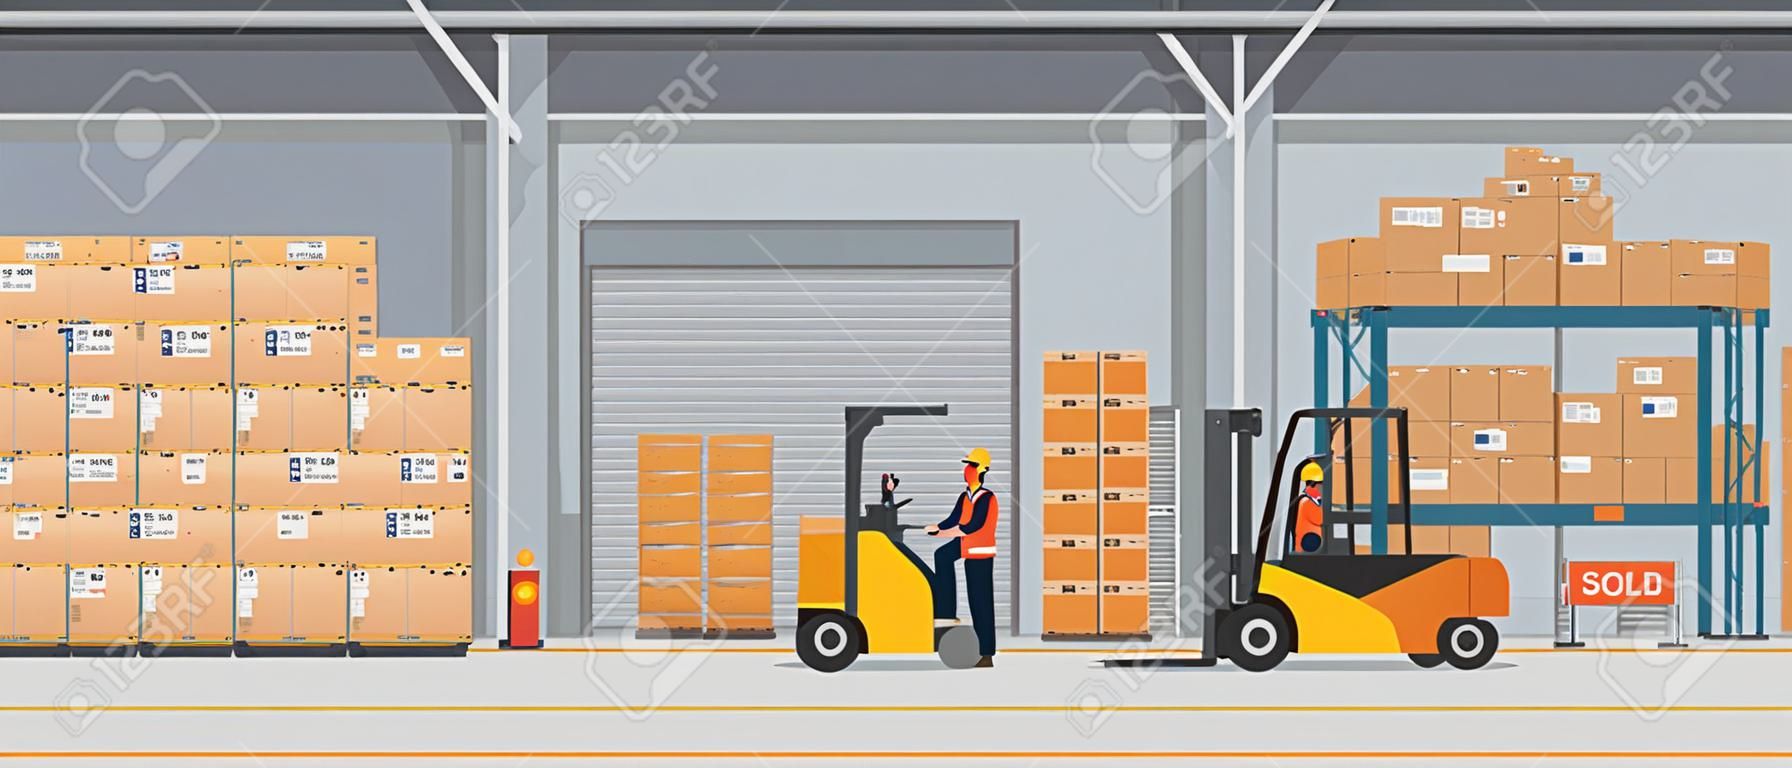 Intérieur de l'entrepôt avec des boîtes sur rack et des personnes qui travaillent. Concept de service de livraison logistique de style plat et de couleur unie. Illustration vectorielle.